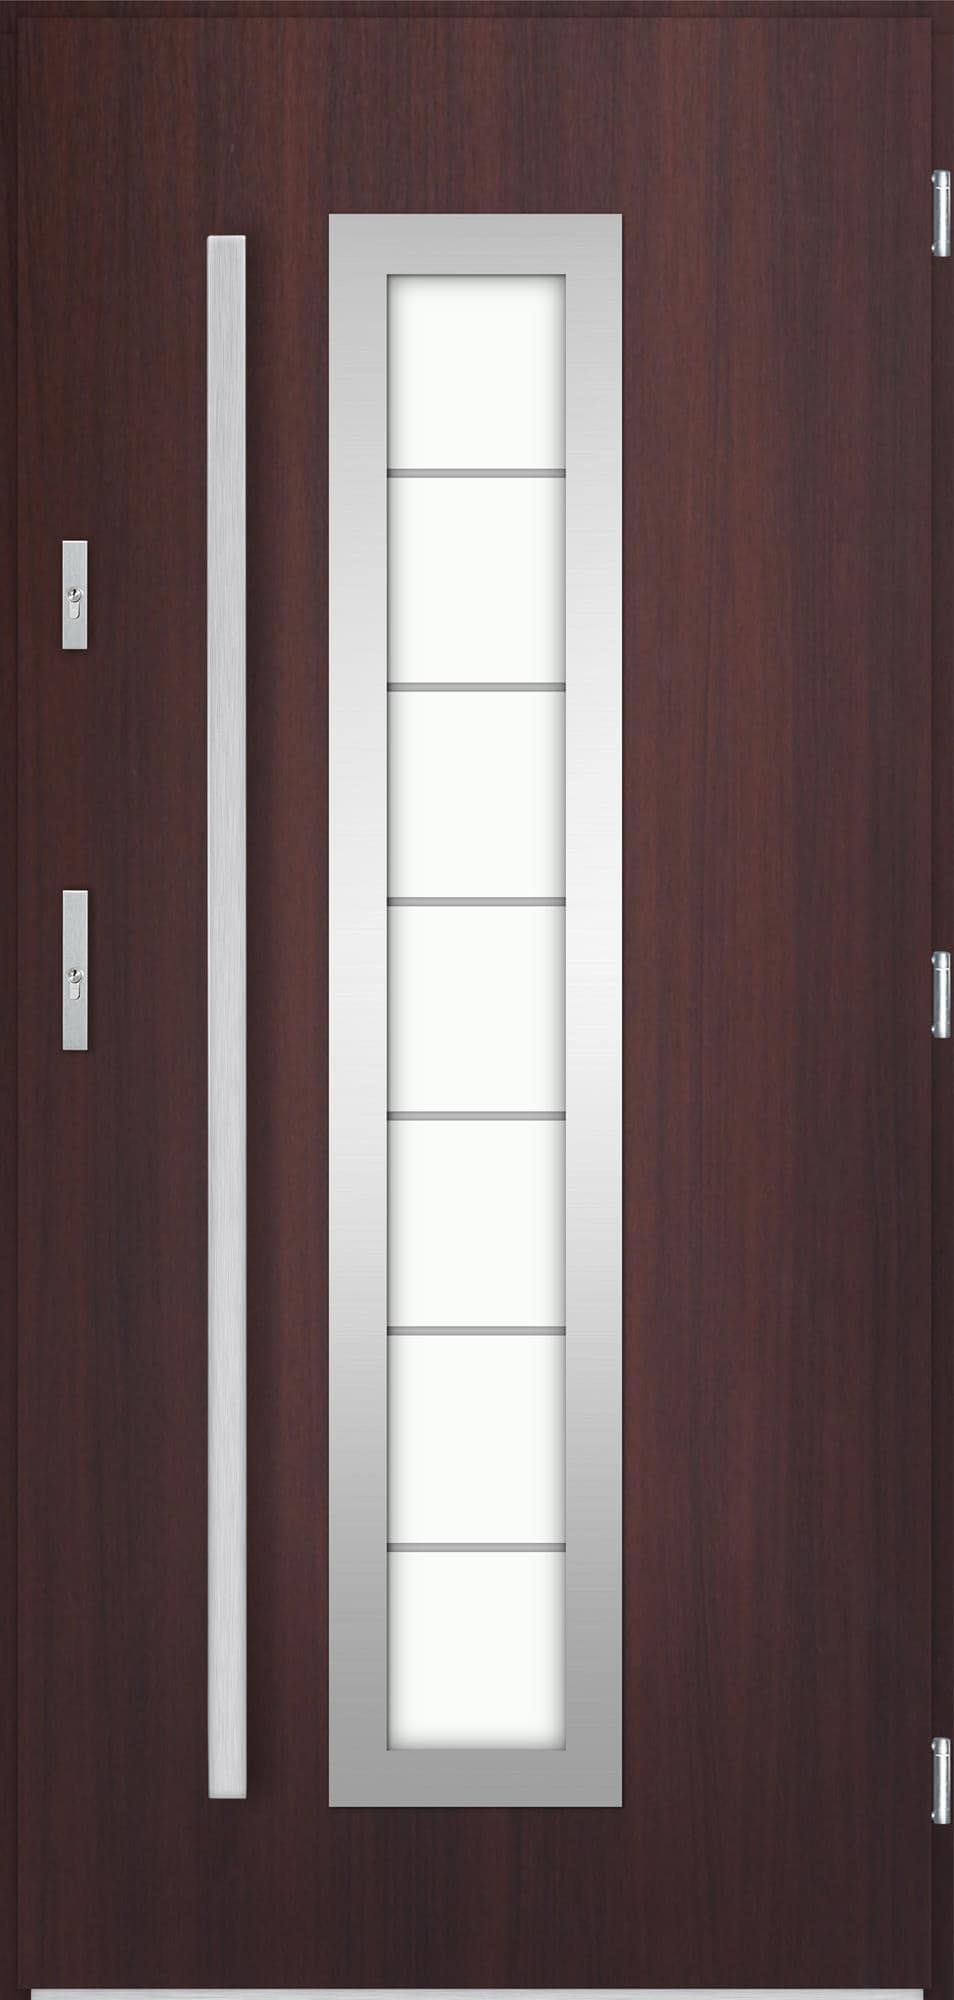 Venkovní vchodové dveøe Hevelio v odstínu mahagon